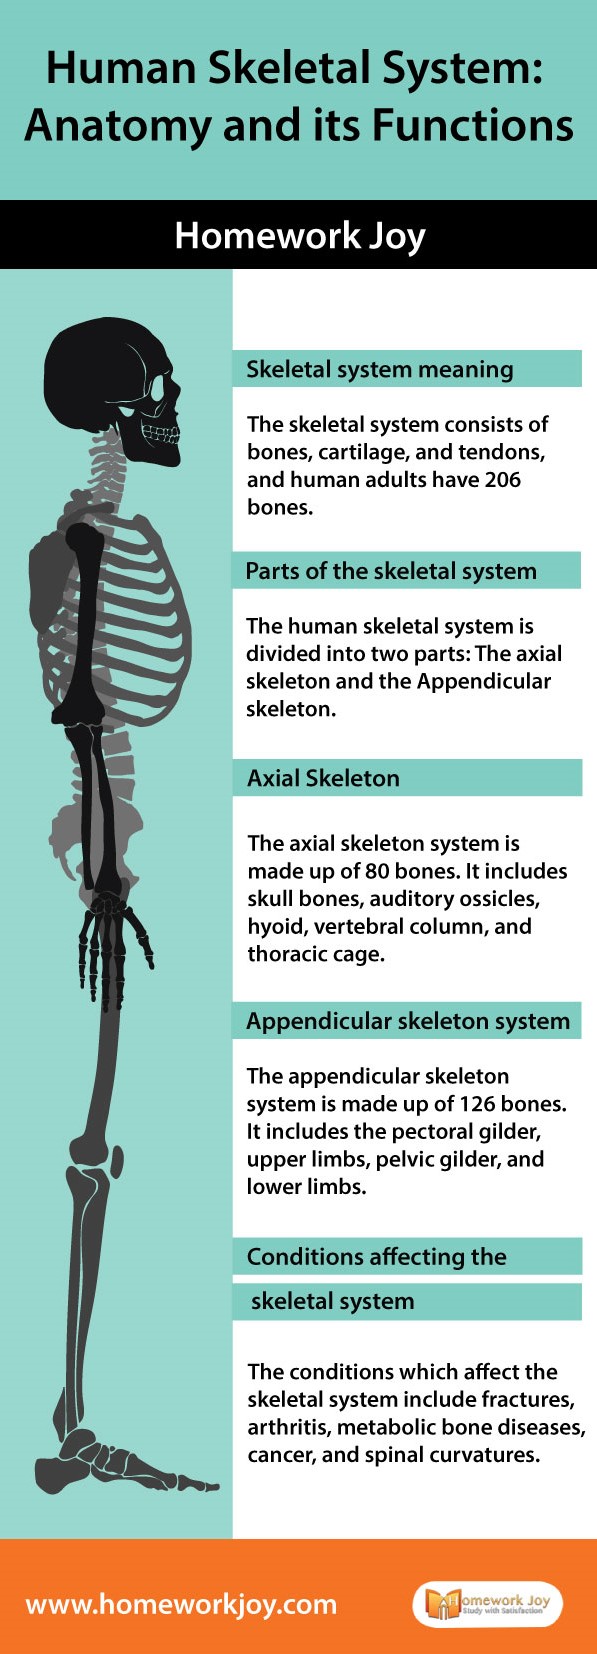 Human-Skeletal-System